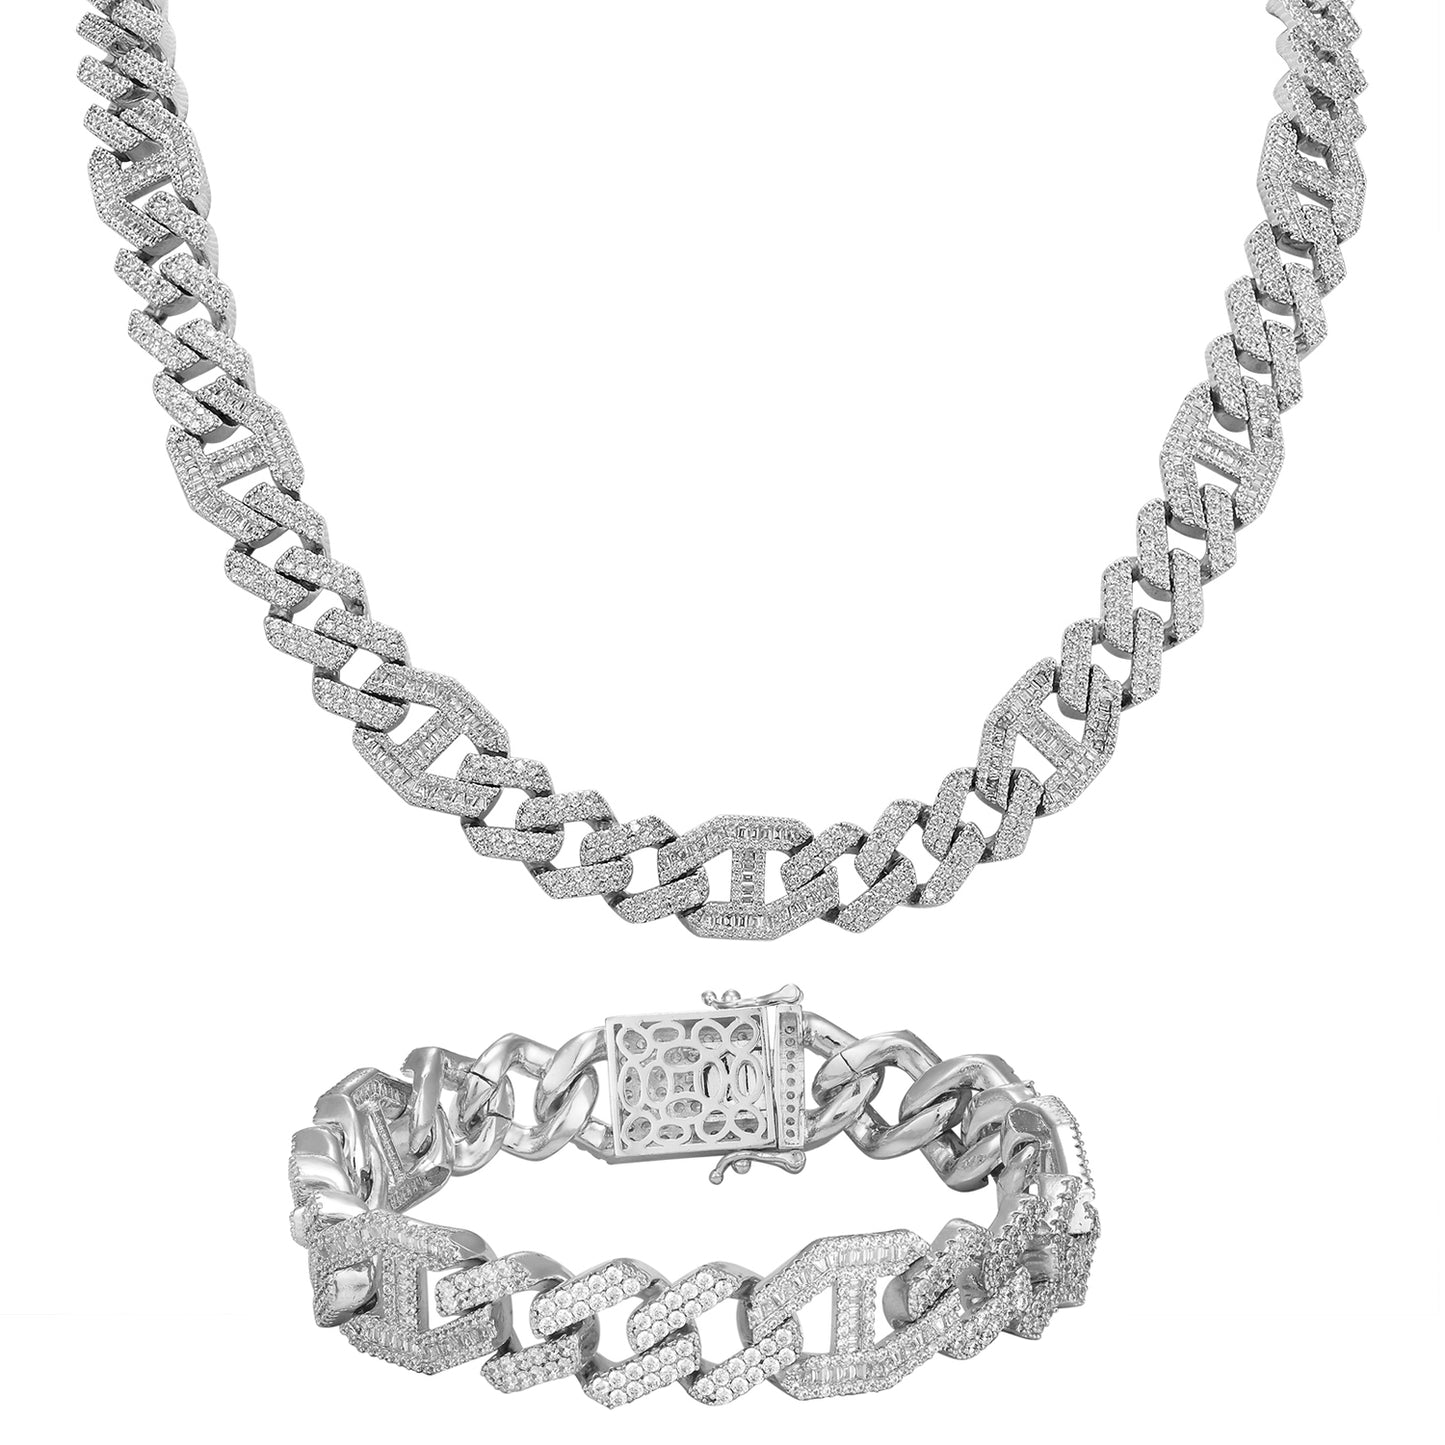 15MM Mariner Square Baguette Miami Cuban Chain Bracelet Set